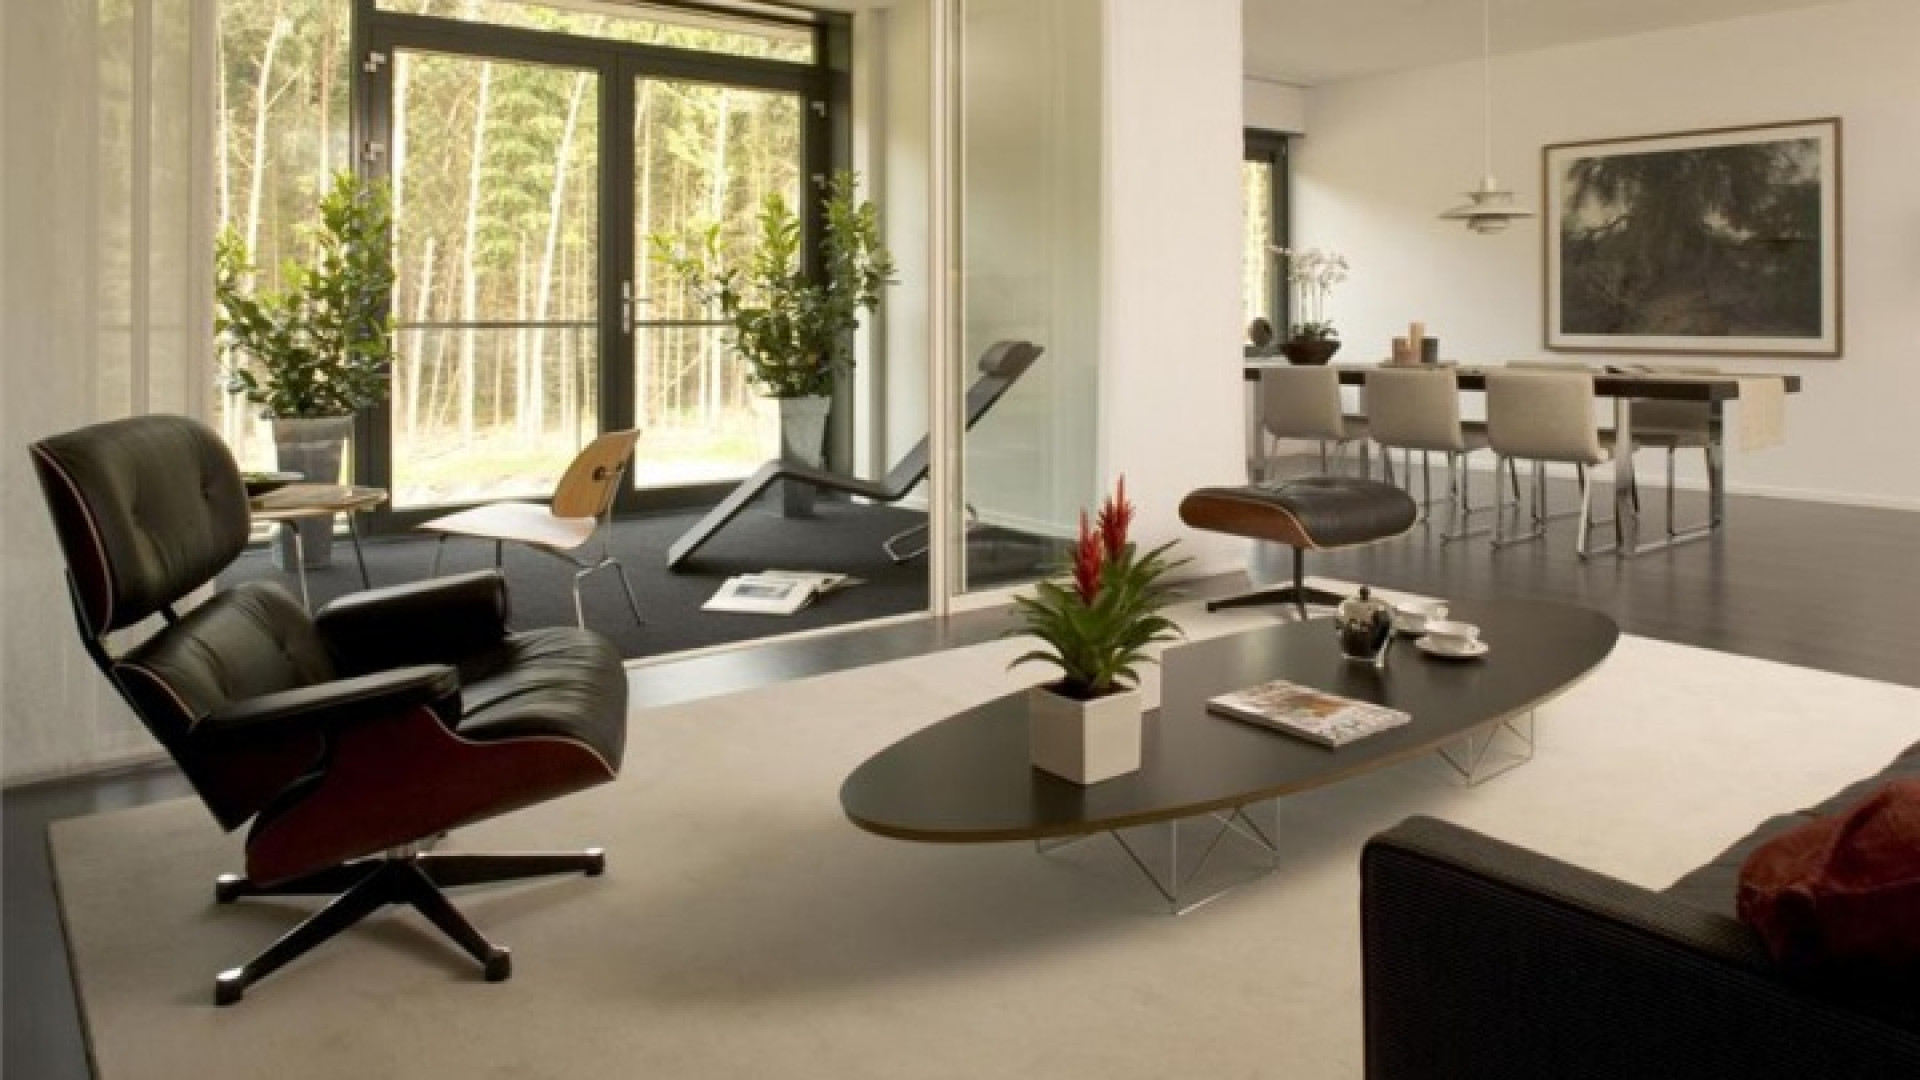 Ilse de Lange huurt luxe penthouse in Hilversum. Zie foto's 2